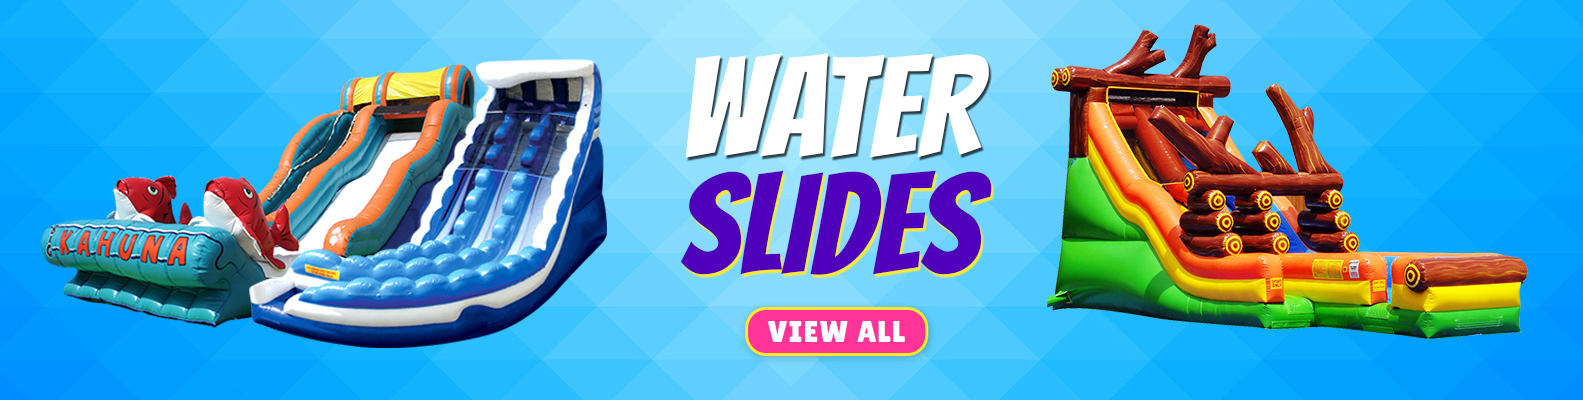 inflatable water slide rentals in Peoria